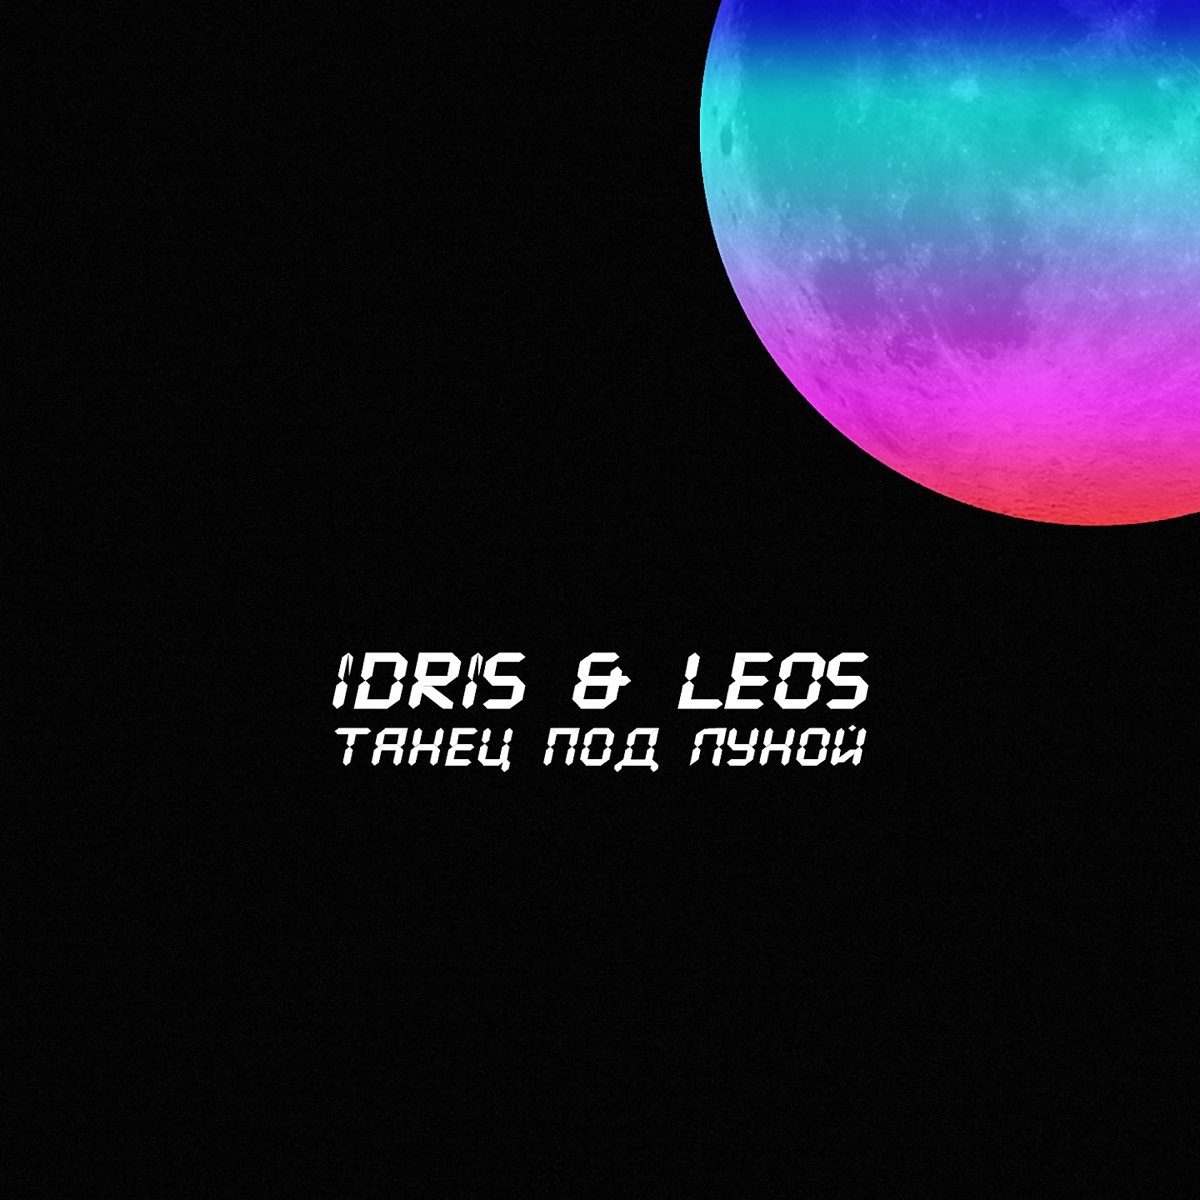 Мы танцуем под луной текст. Idris Leos. Idris Leos обложка. Idris & Leos - образ (Luna ABN Remix). Любить как прежде Idris Leos.